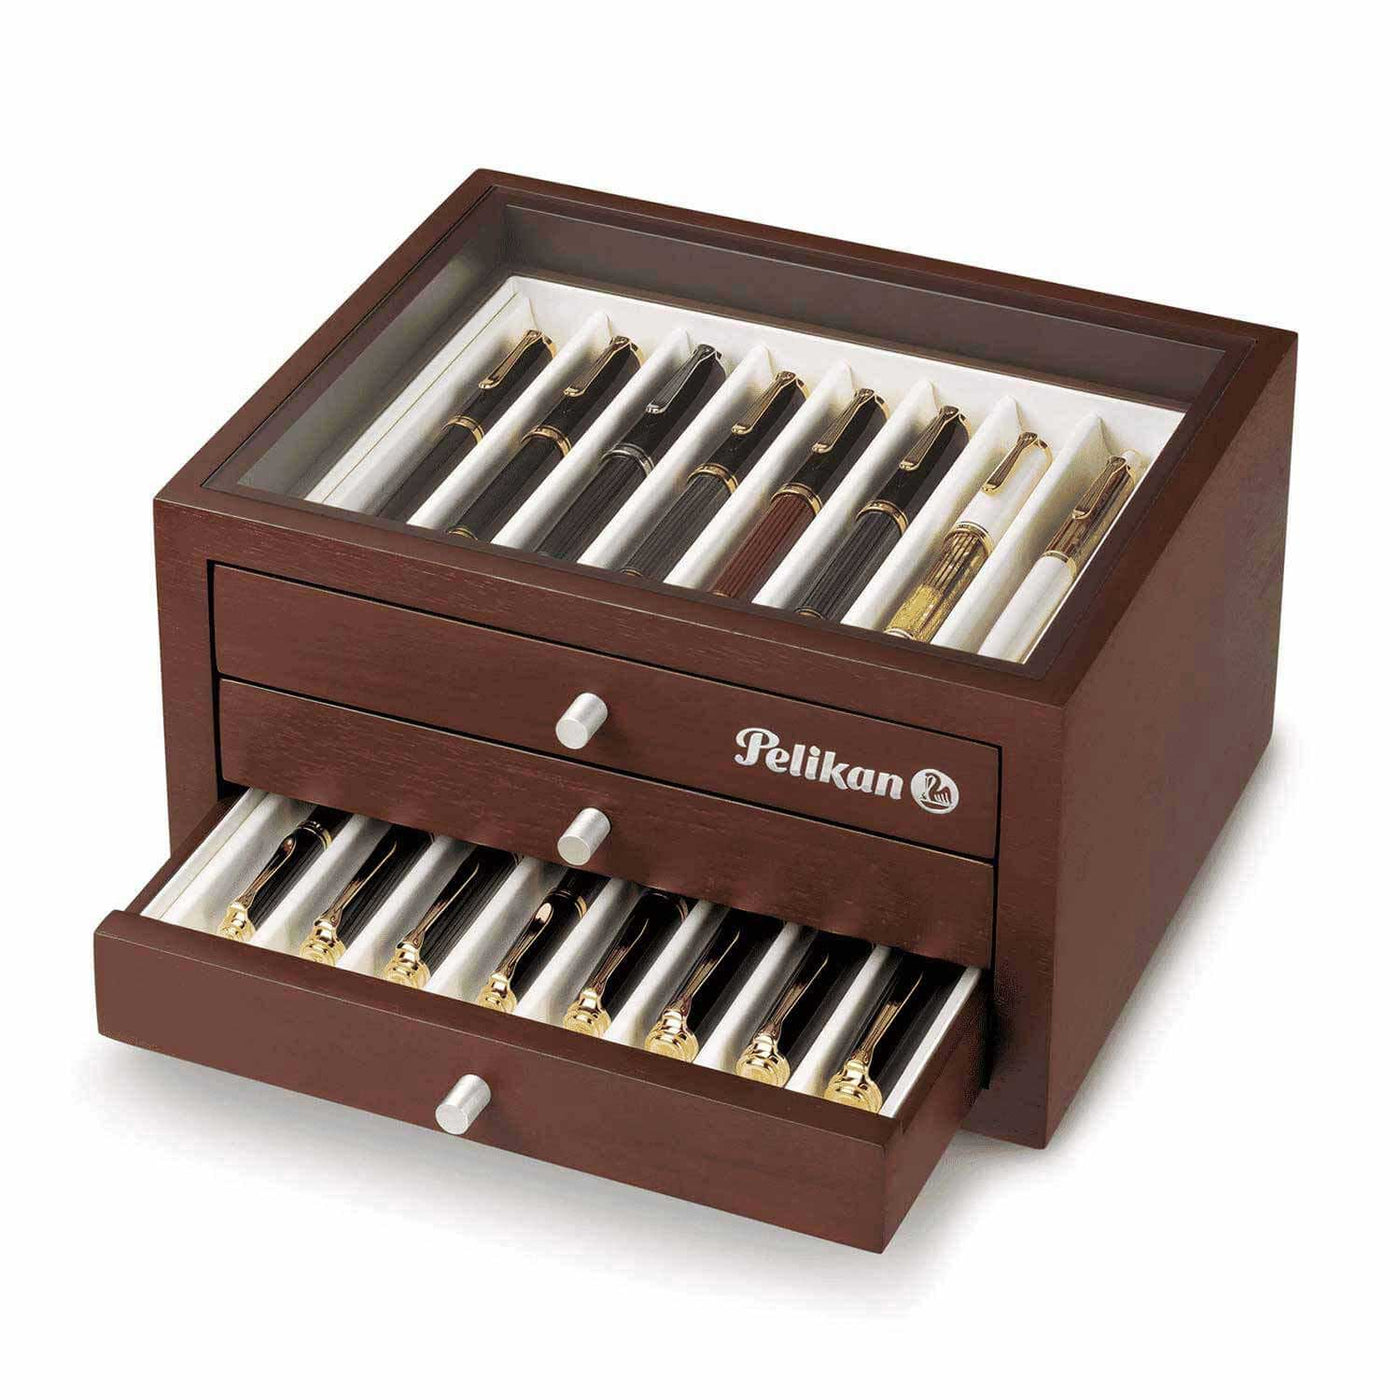 Pelikan Collectors Box For 24 Pens, Brown